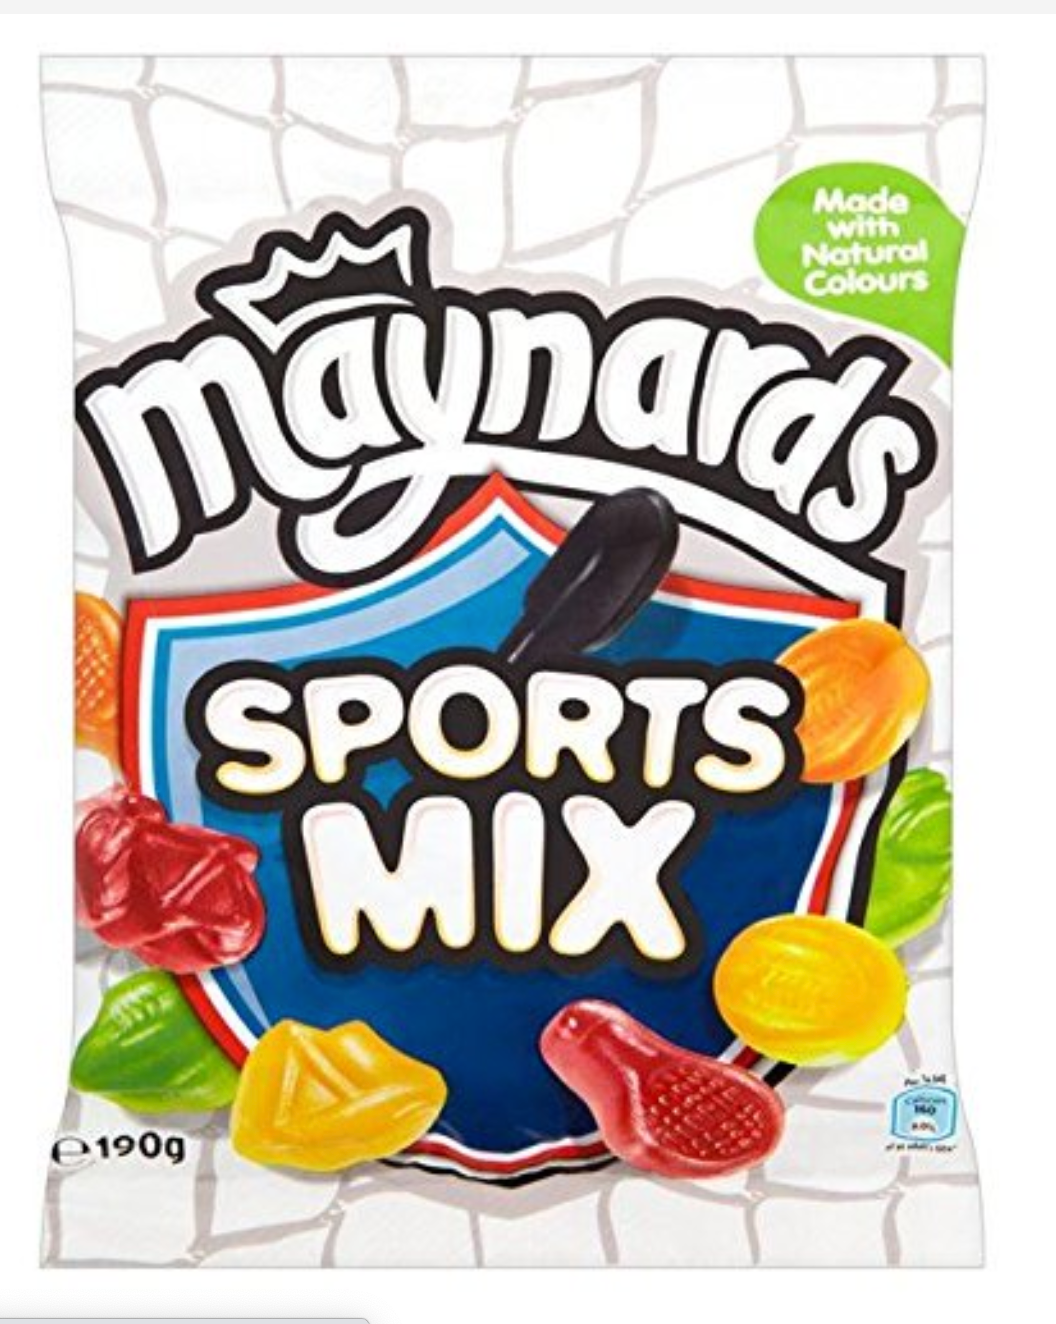 Maynards Bassetts Sports Mix Juices 130g ($2.75/Unit)